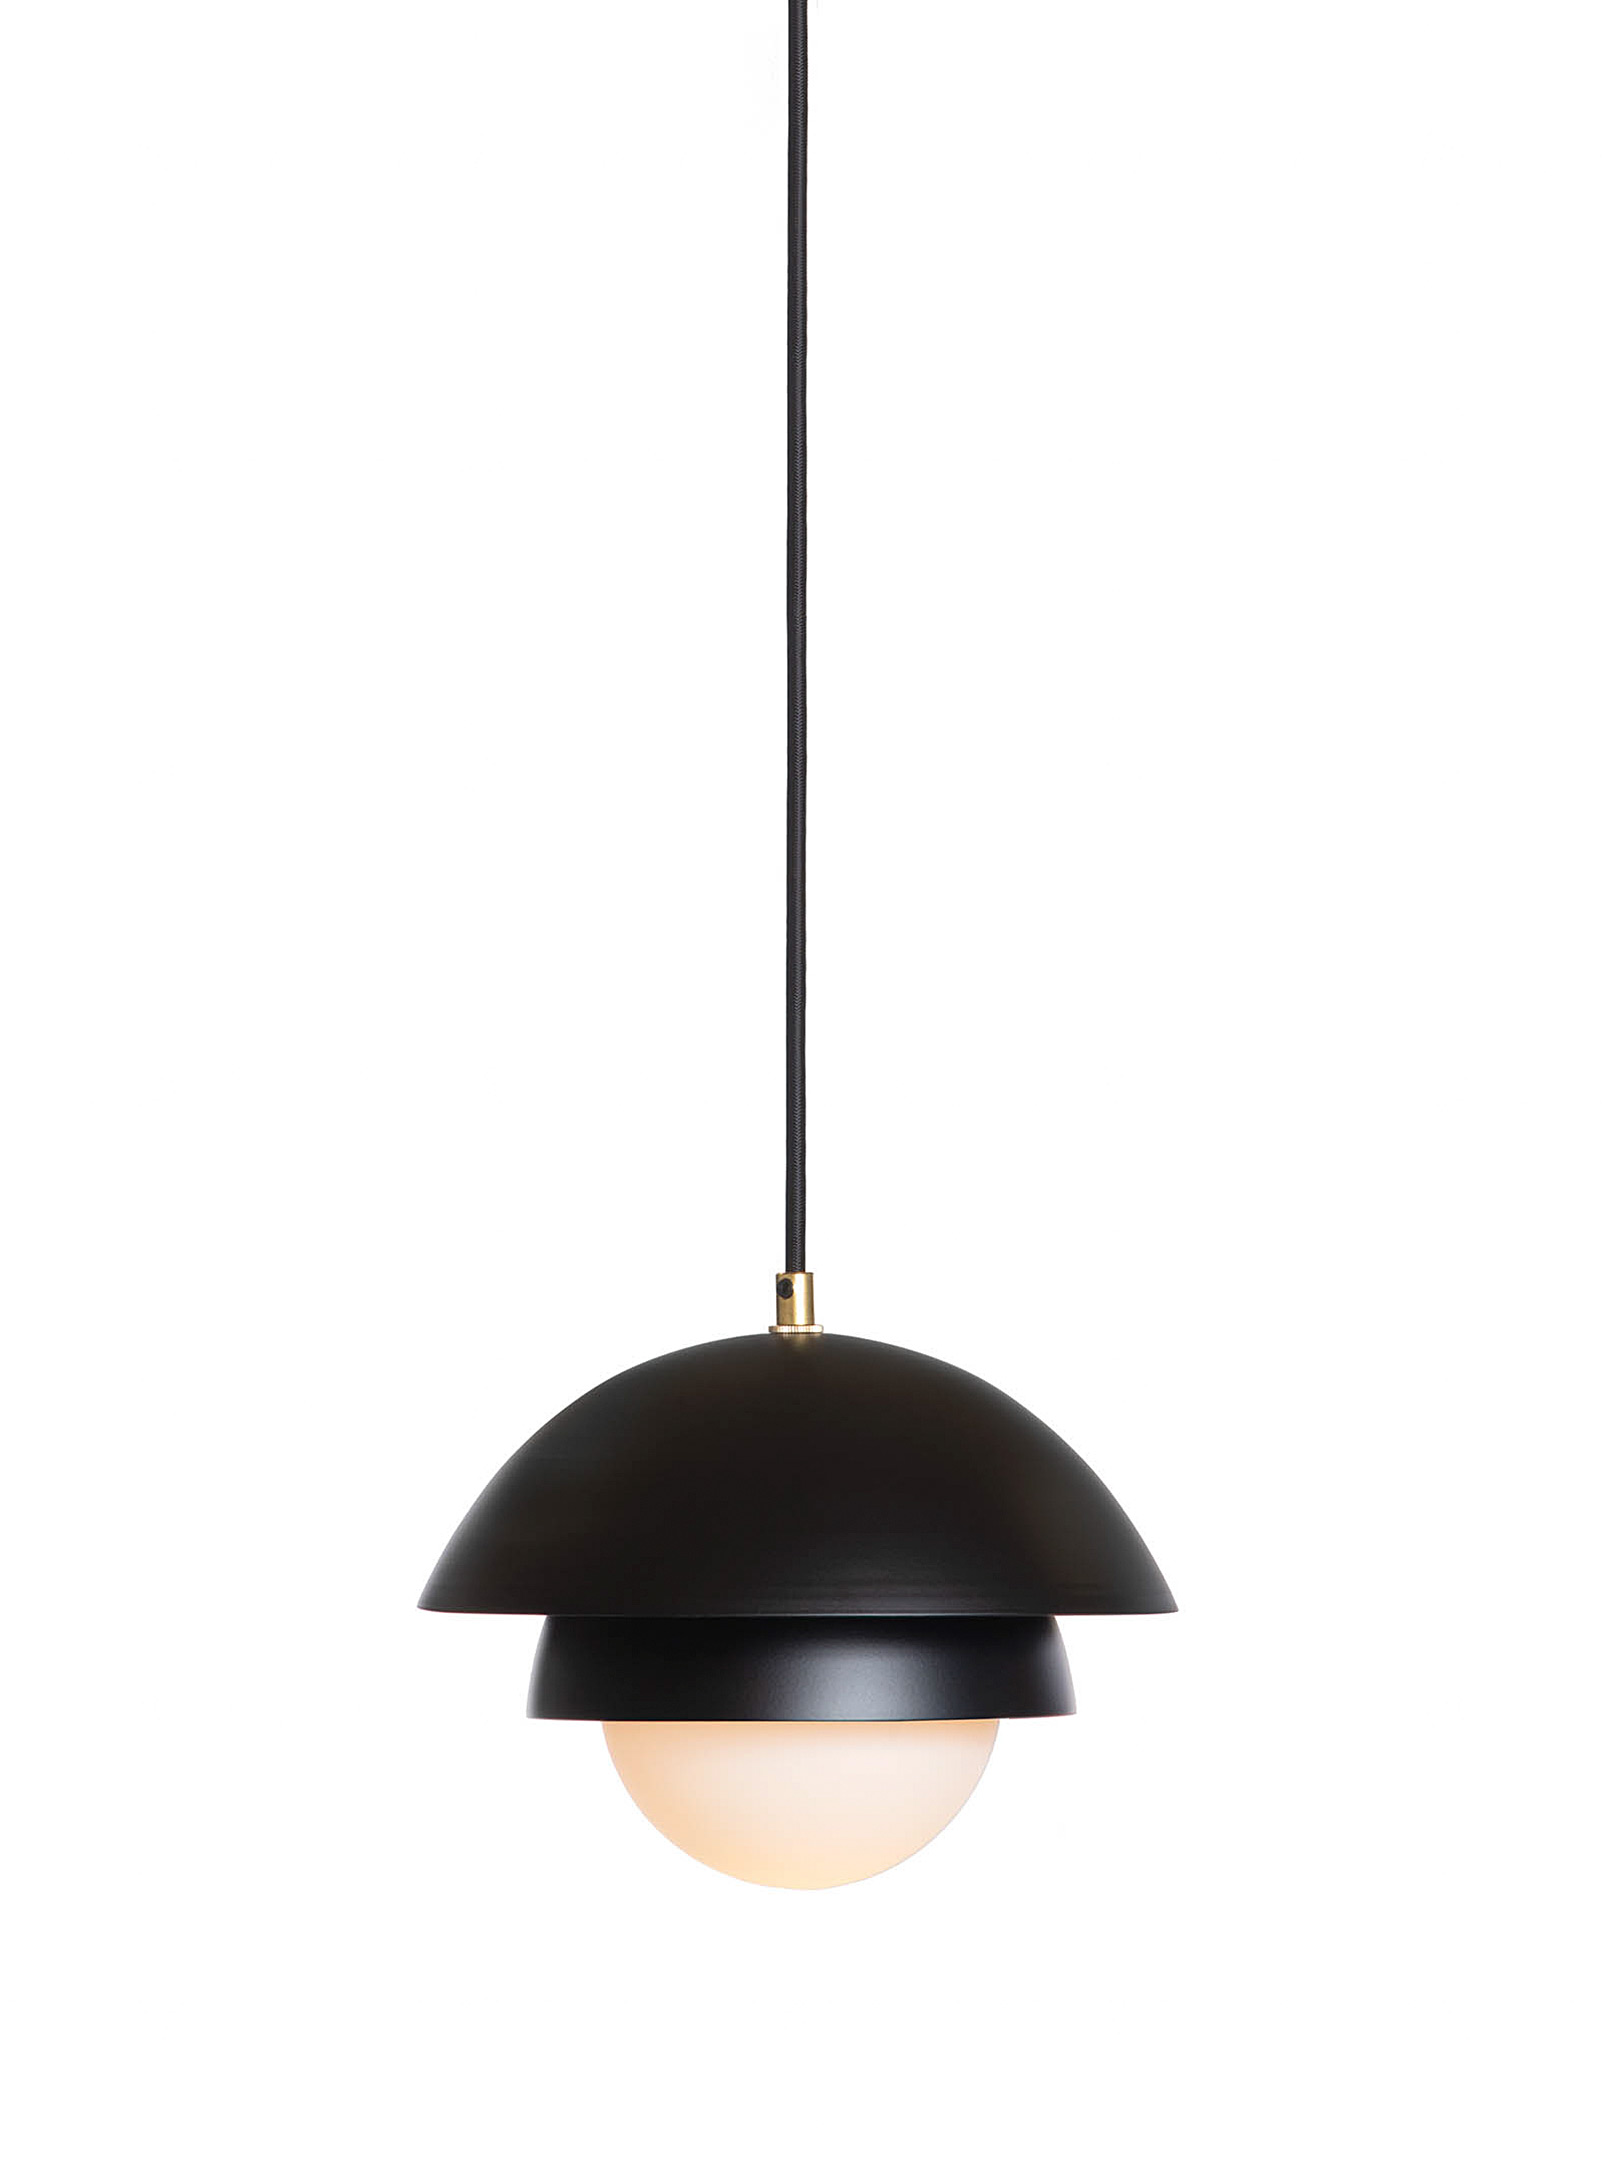 Luminaire Authentik Finlandaise Hanging Lamp In Black